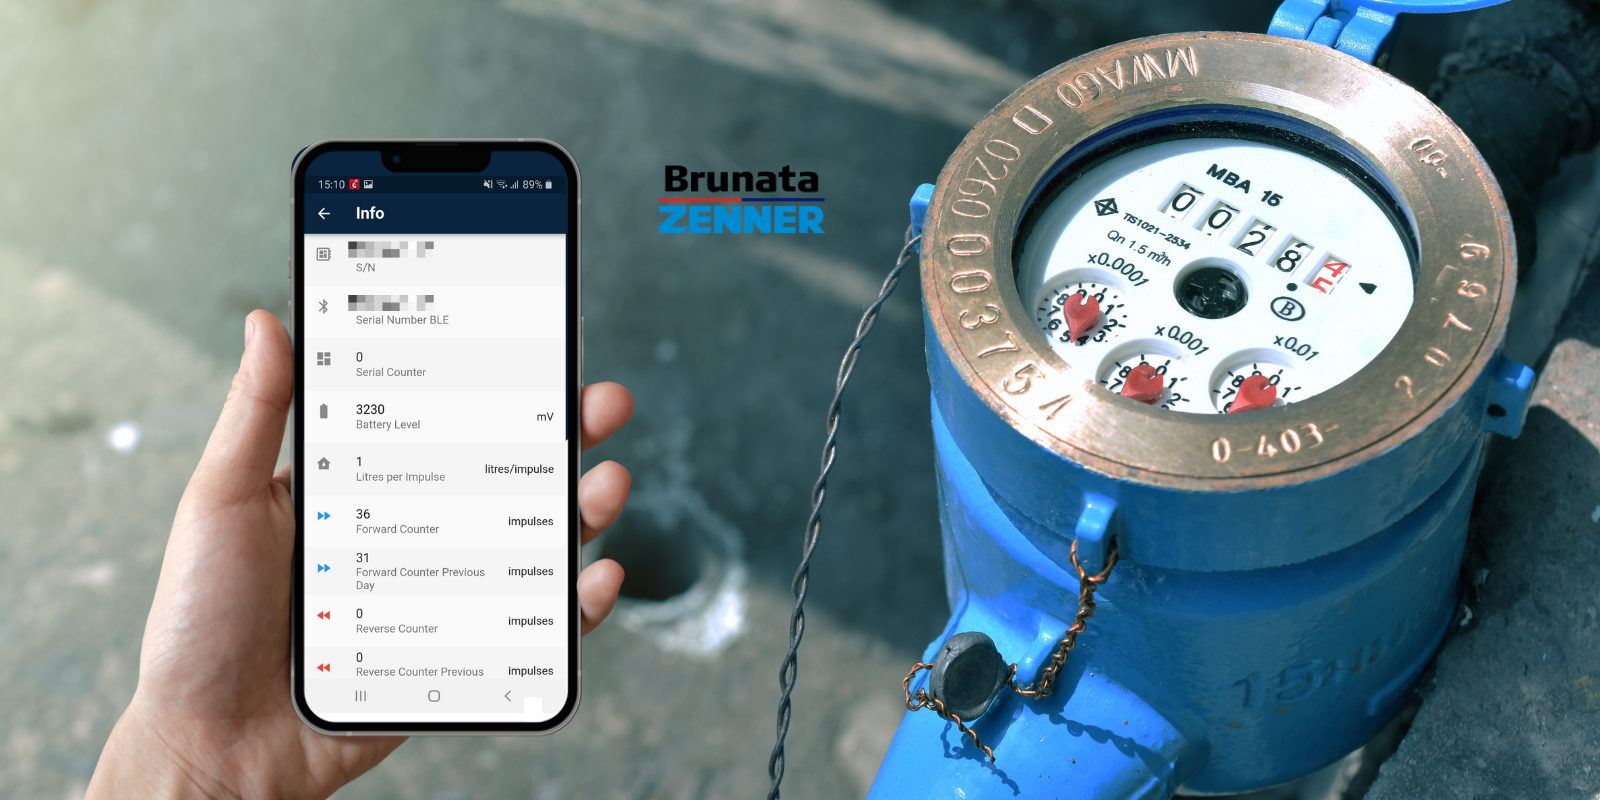 Smarthphone per visualizzare dati relativi all'acqua tramite lo smart metering, collaborazione con Brunata Zenner